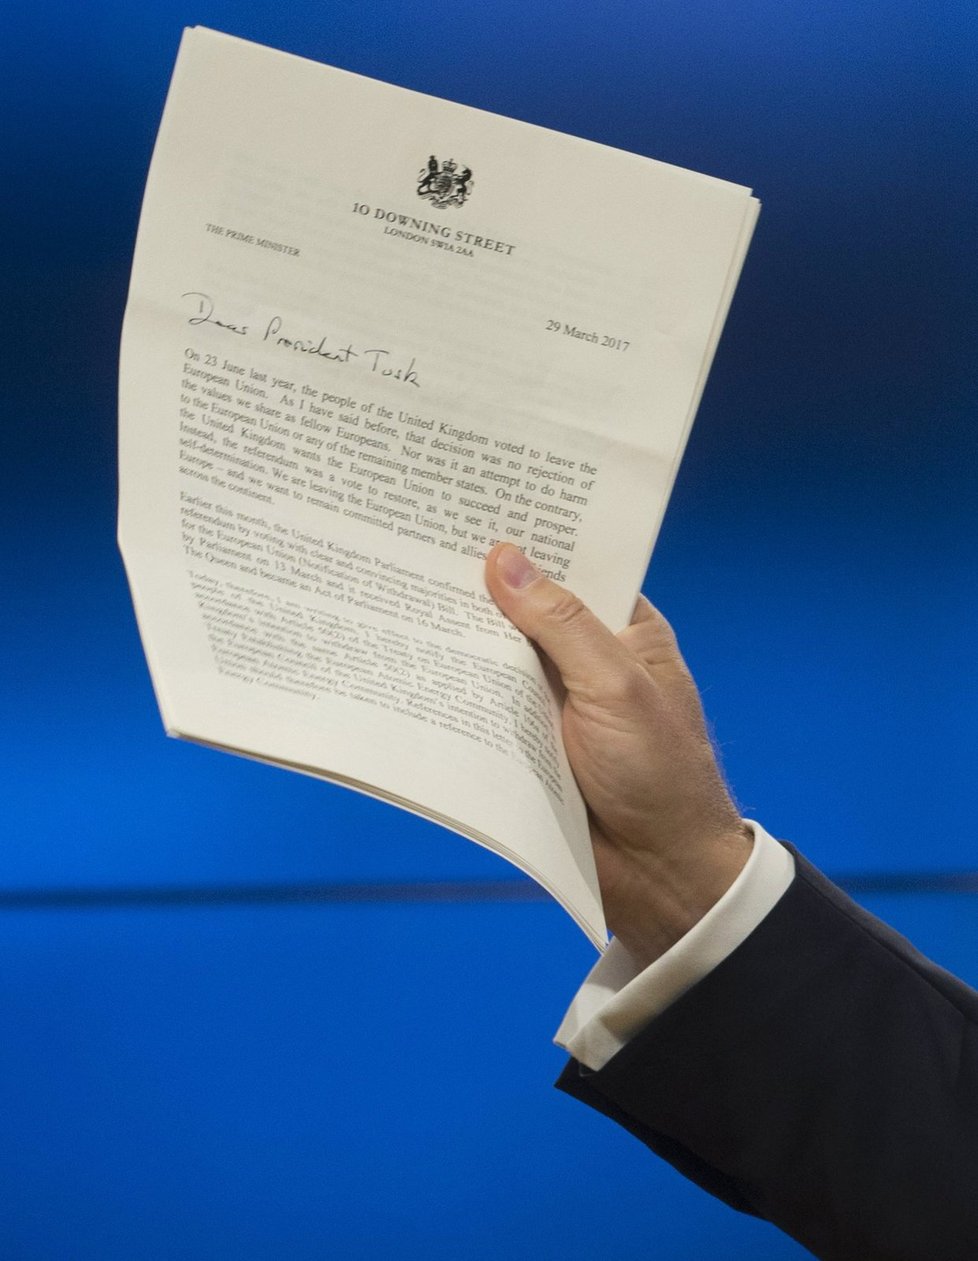 Velká Británie právě spustila brexit. Předseda Evropské rady Donald Tusk drží oficiální dopis od britské premiérky, který oznamuje začátek procesu, na jehož konci bude odchod Británie z EU, 29. 3. 2017, Brusel.